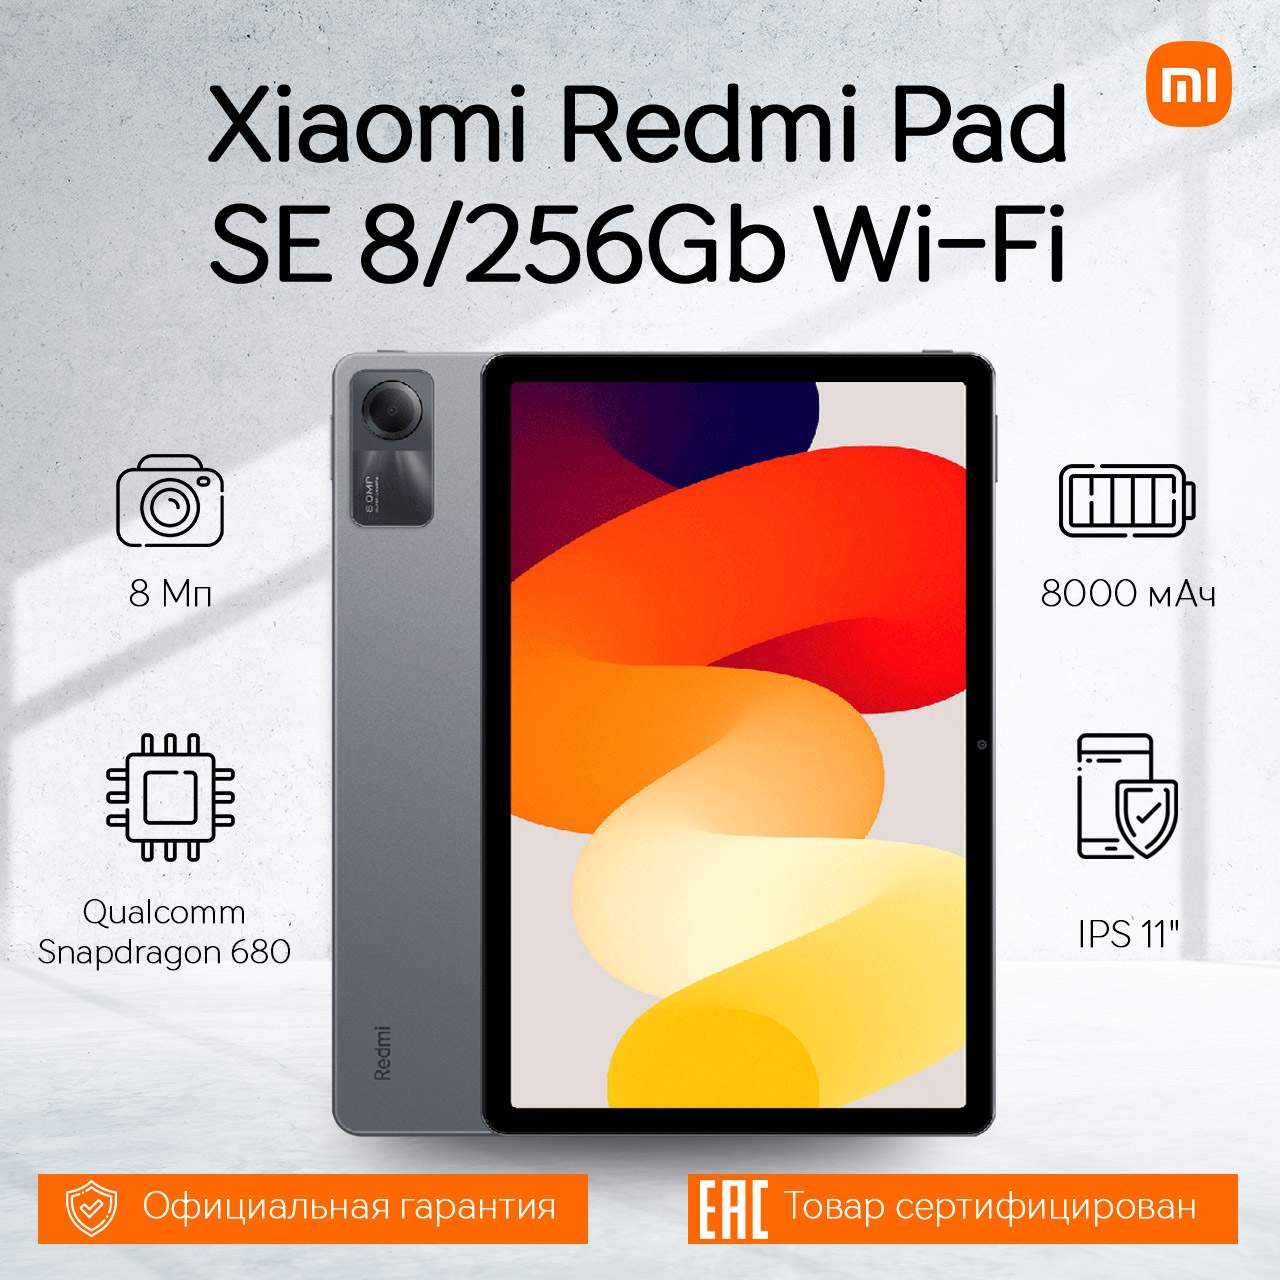 Планшет Xiaomi Redmi Pad SE 8 256Gb Wi-Fi Graphite Gray, купить в Москве, цены в интернет-магазинах на Мегамаркет